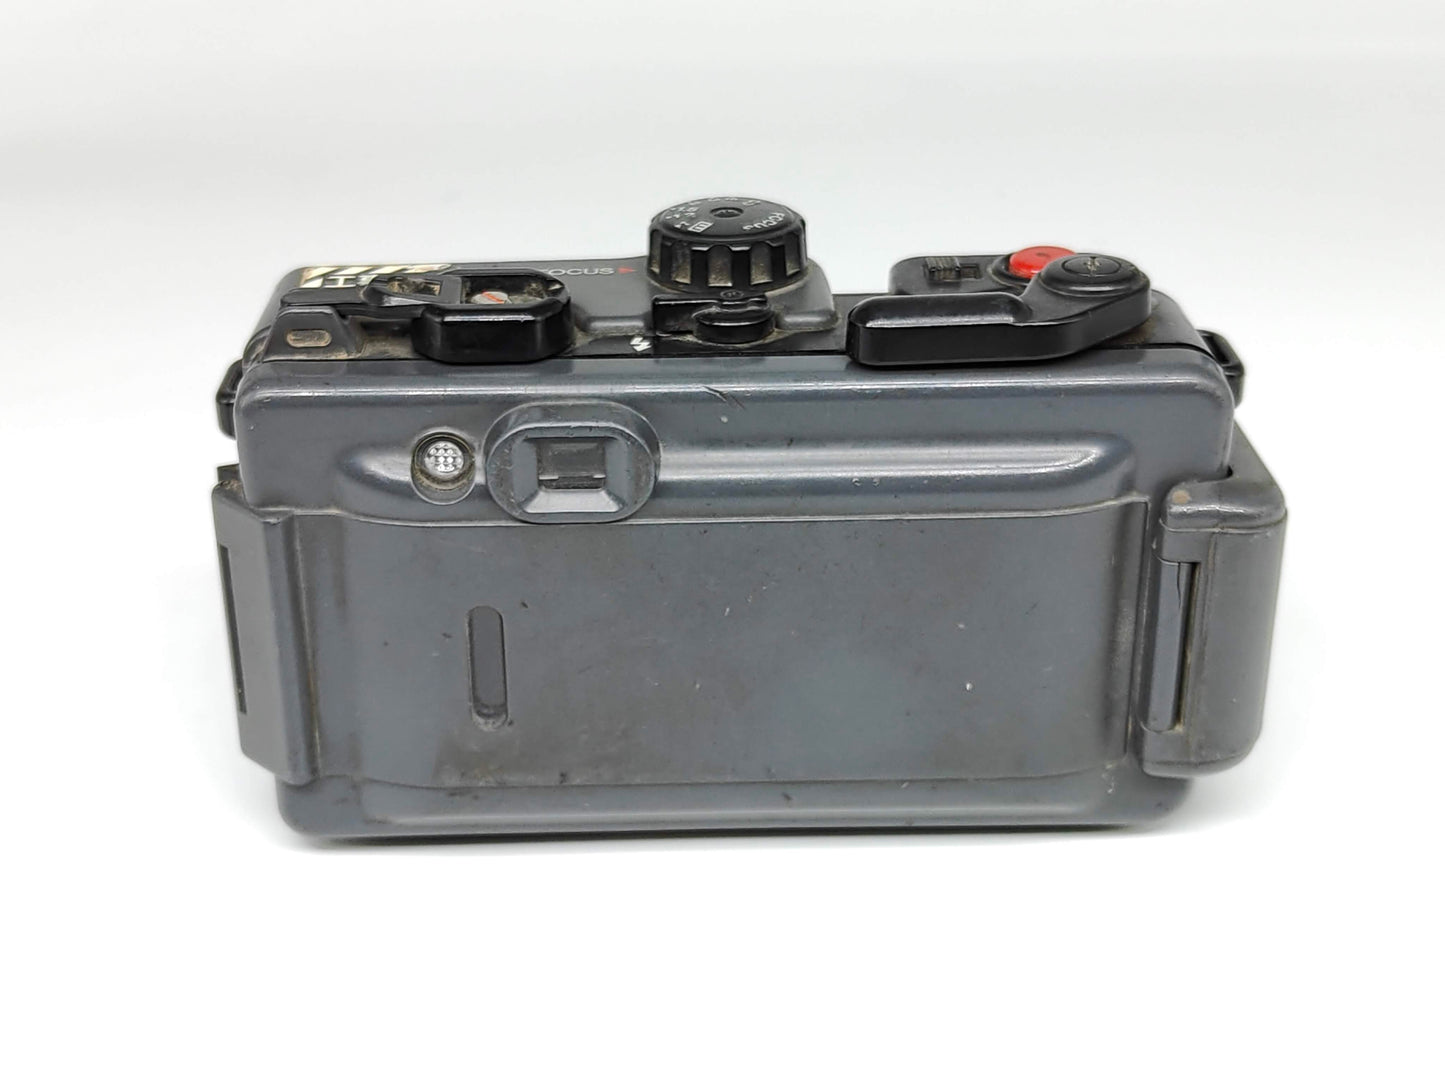 Fuji K-35 rugged film camera